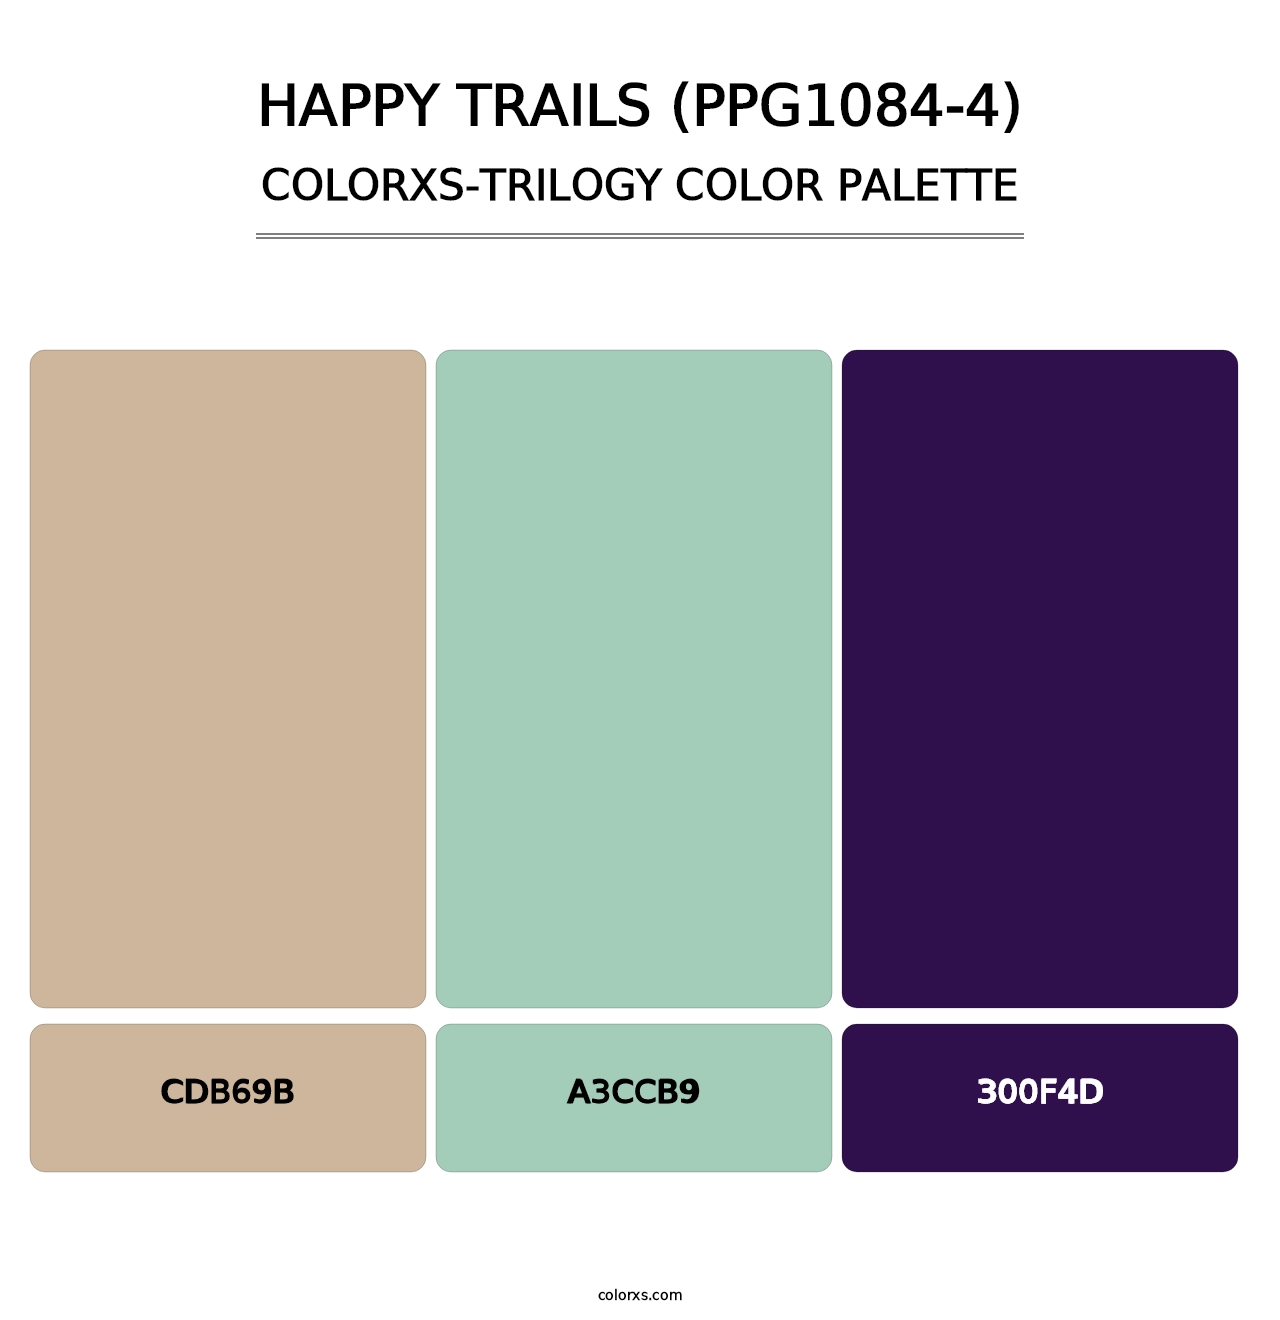 Happy Trails (PPG1084-4) - Colorxs Trilogy Palette